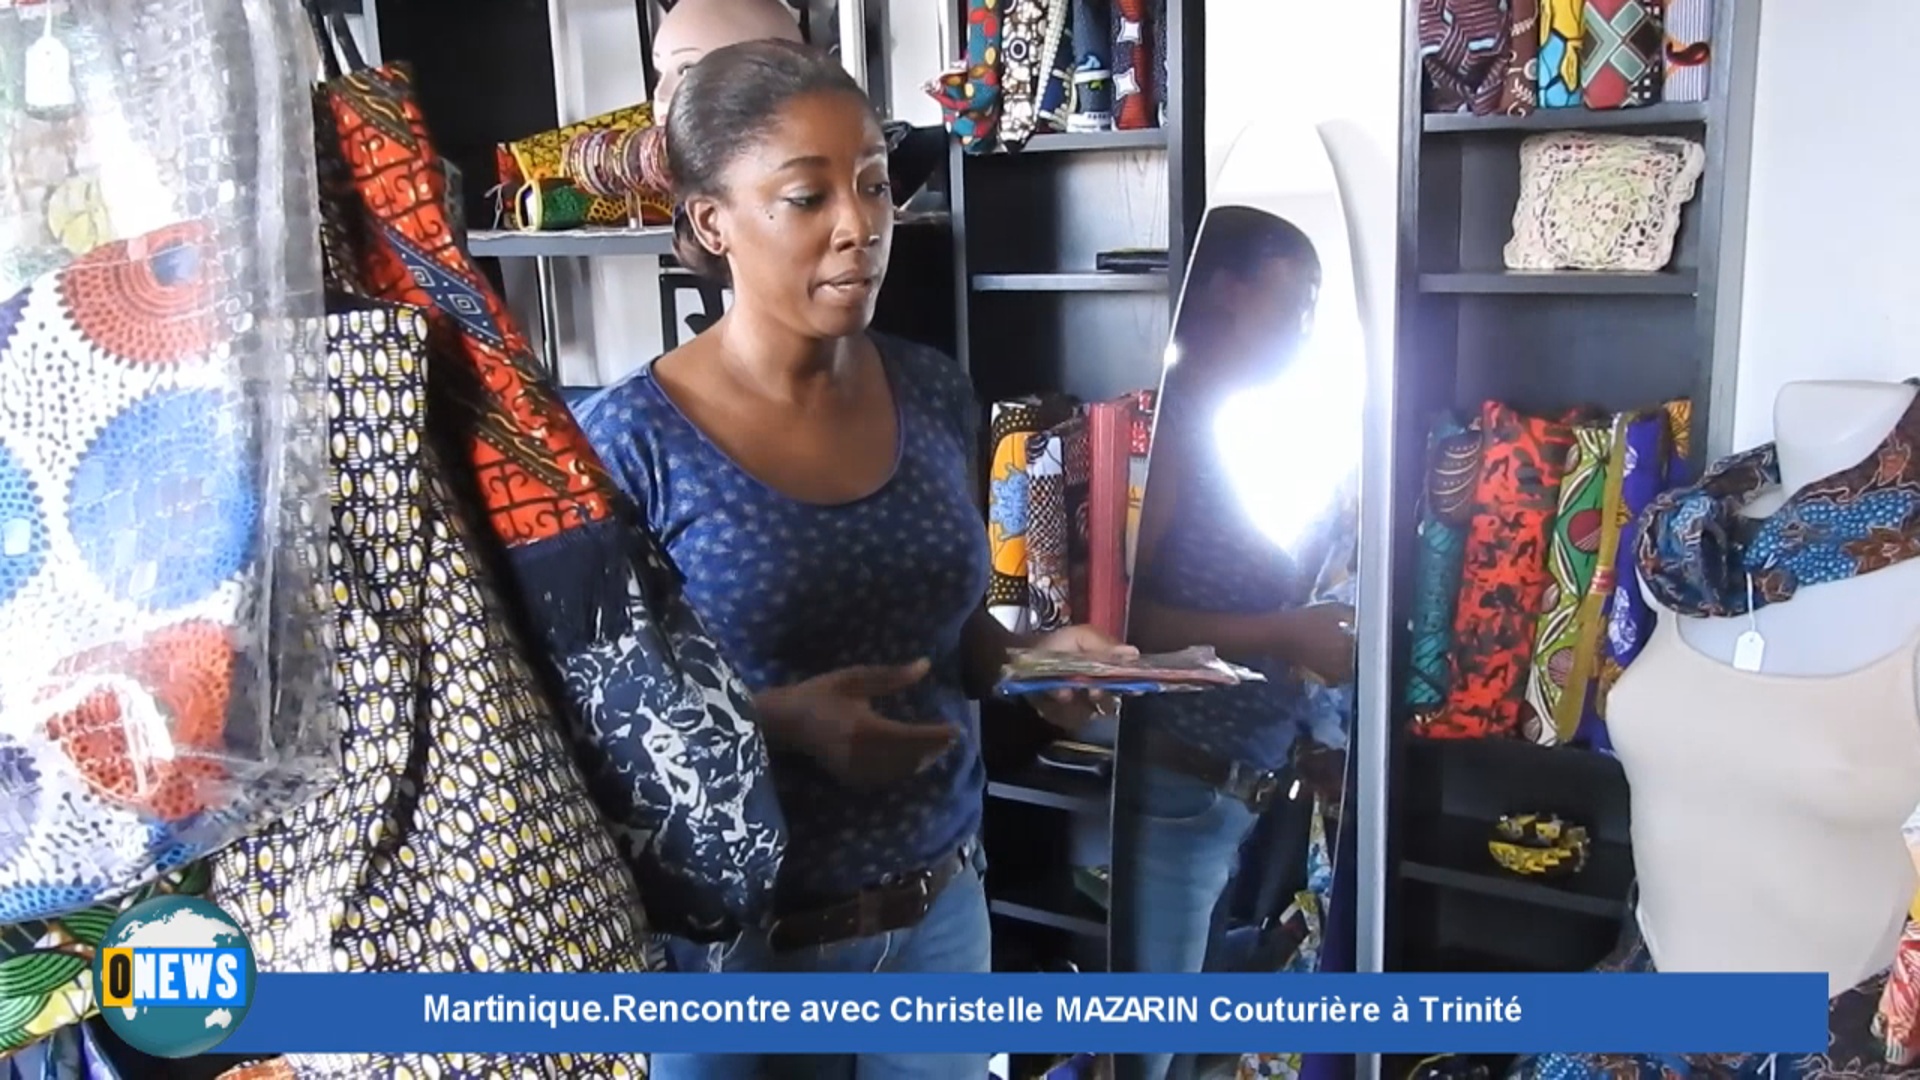 [Vidéo] Onews Martinique. Rencontre avec Christelle MAZARIN Couturière à Trinité